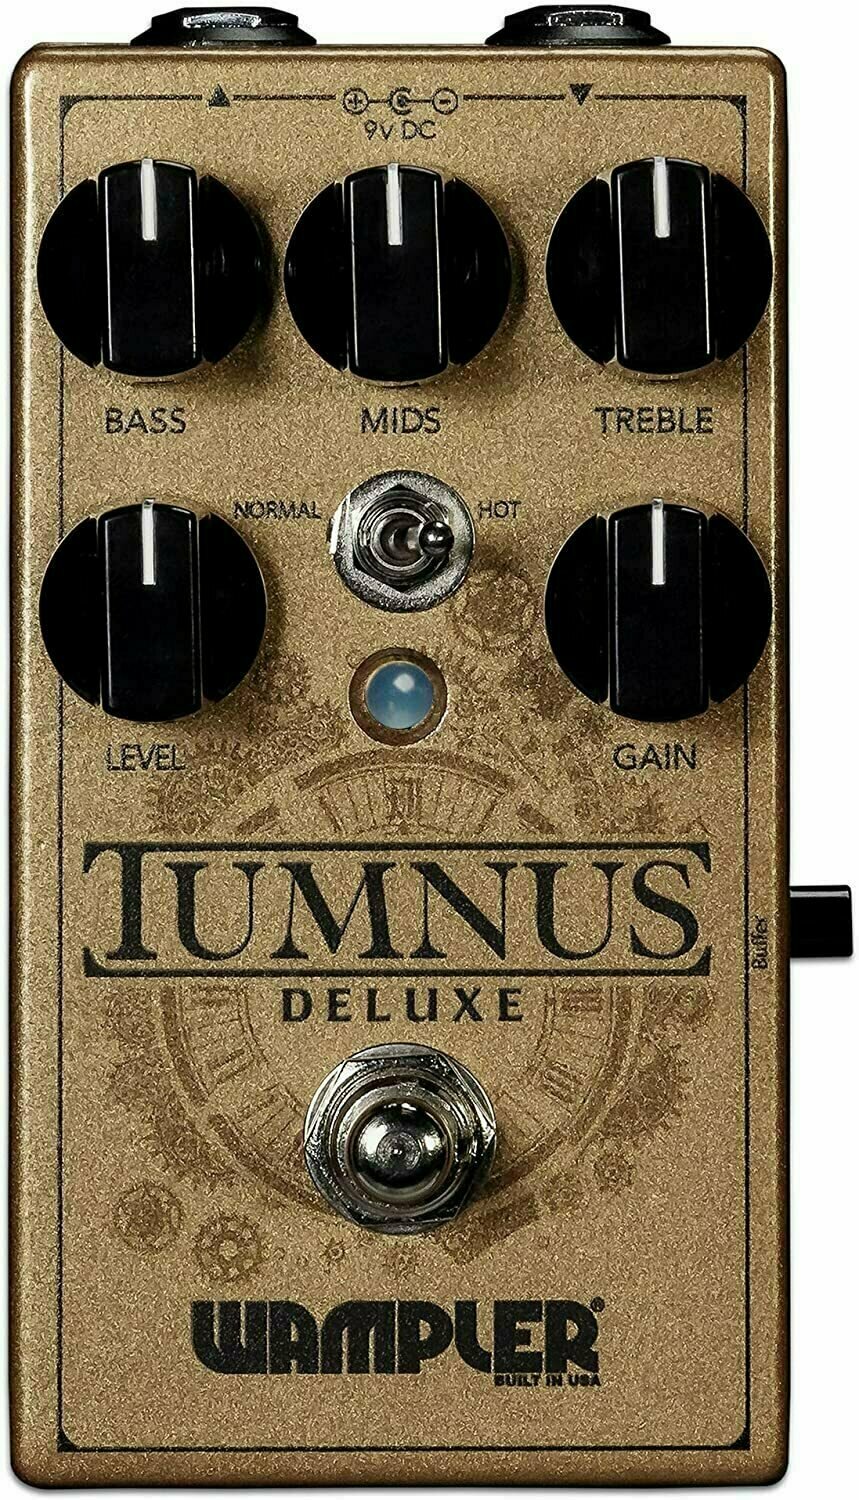 Gitarreneffekt Wampler Tumnus Deluxe